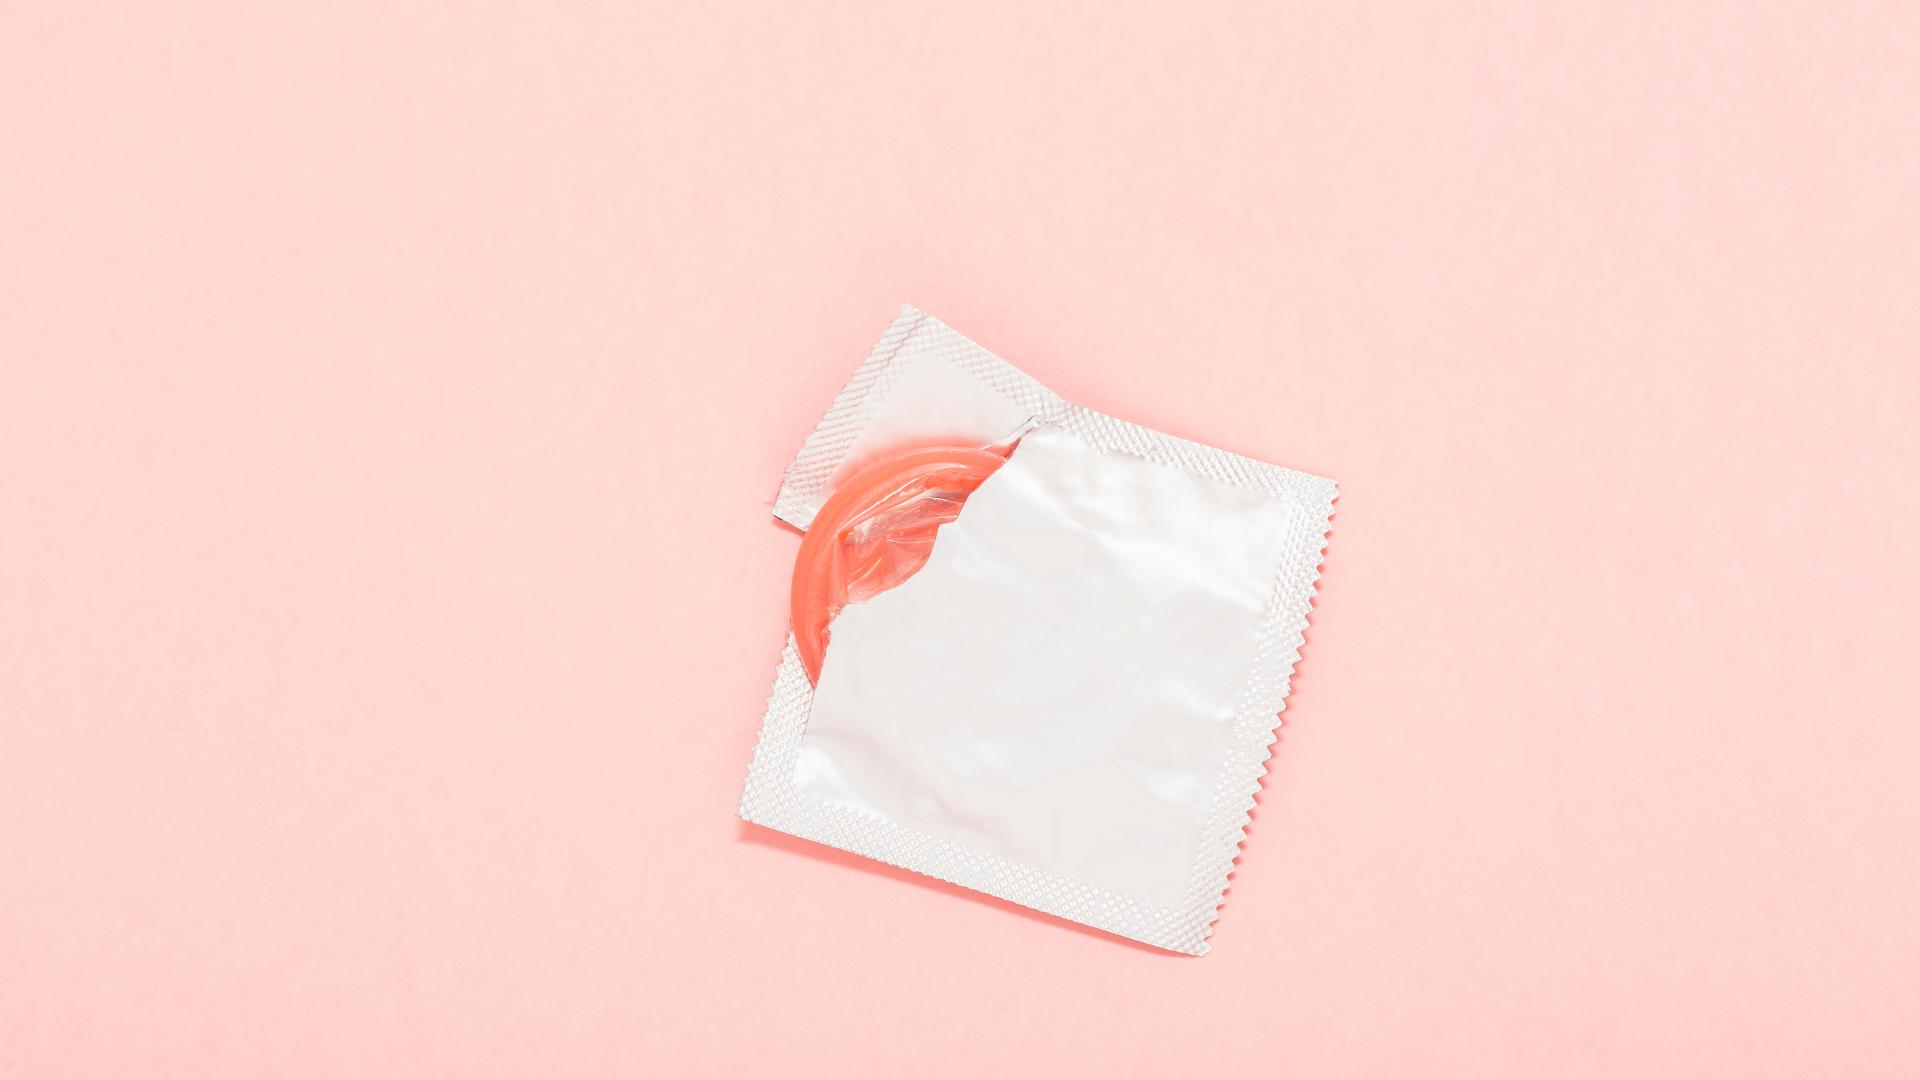 Stecken rausziehen kondom geblieben beim Hilfe (Kondom